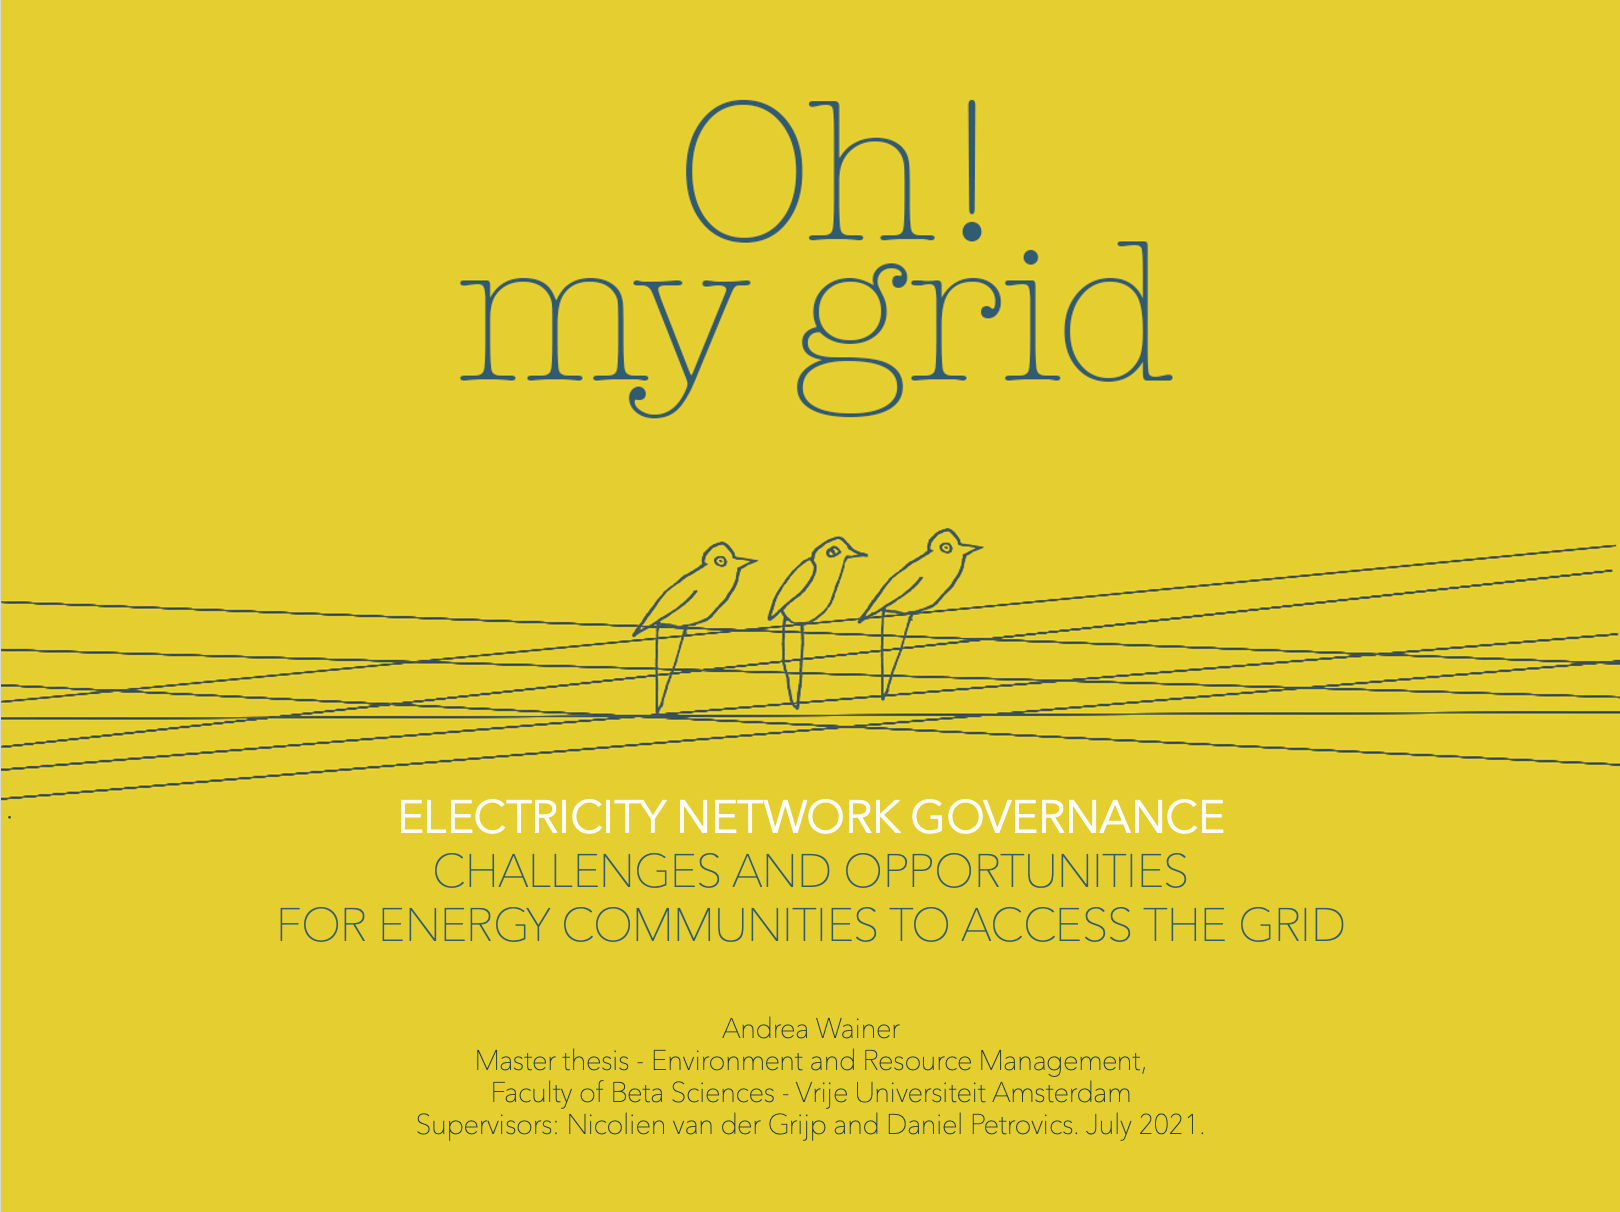 Conditions d’accès au réseau des communautés énergétiques citoyennes